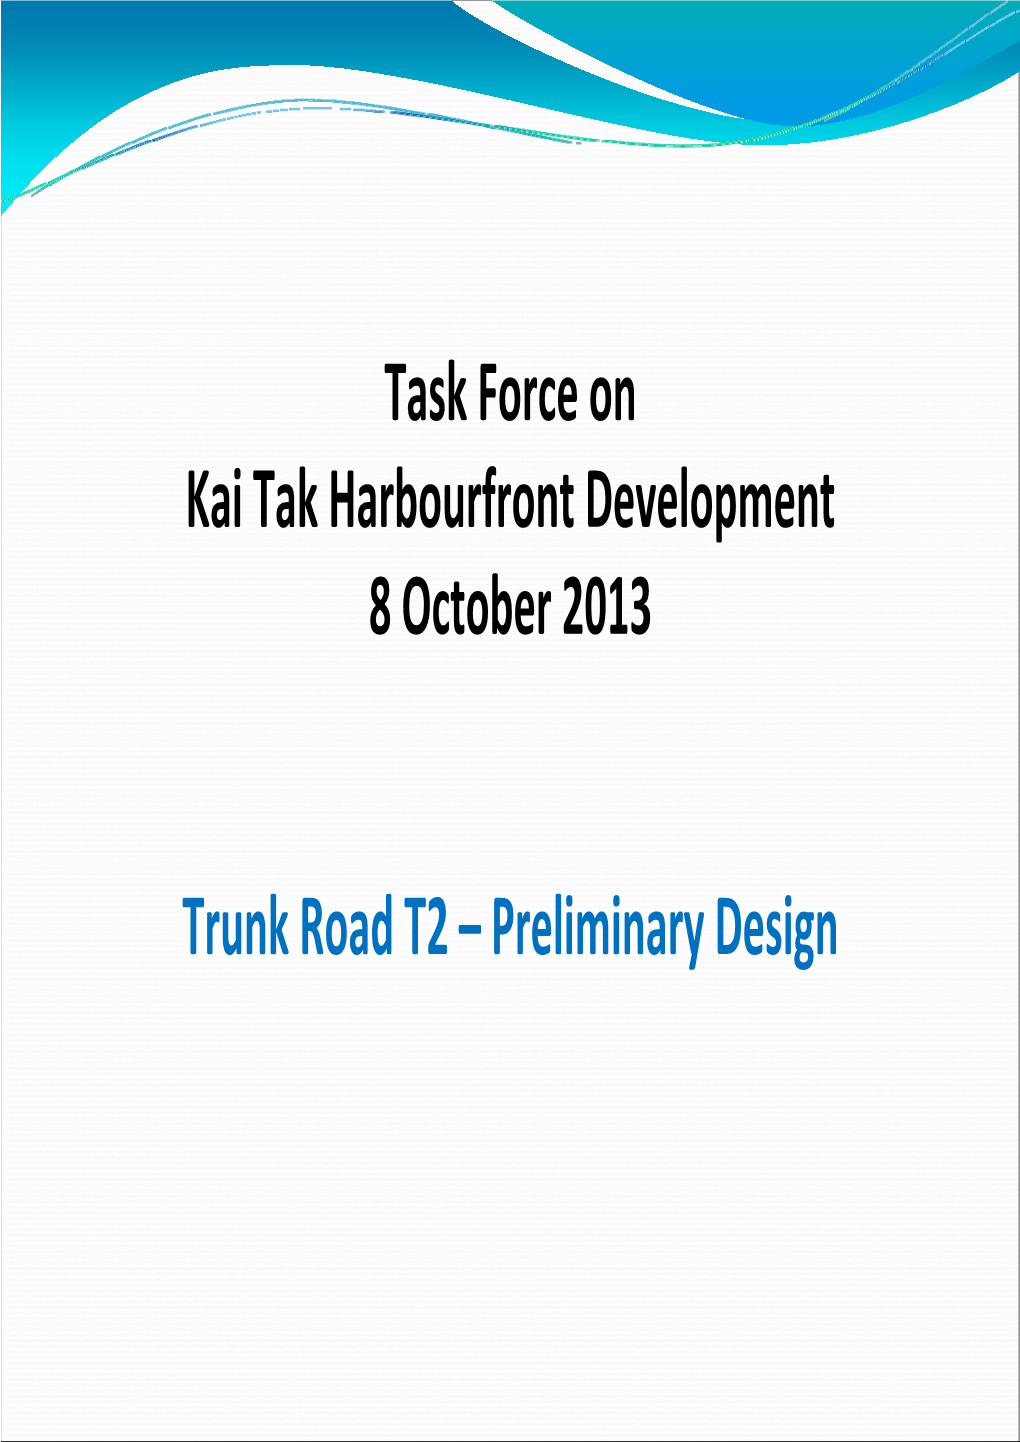 Trunk Road T2 – Preliminary Design ROUTE 6